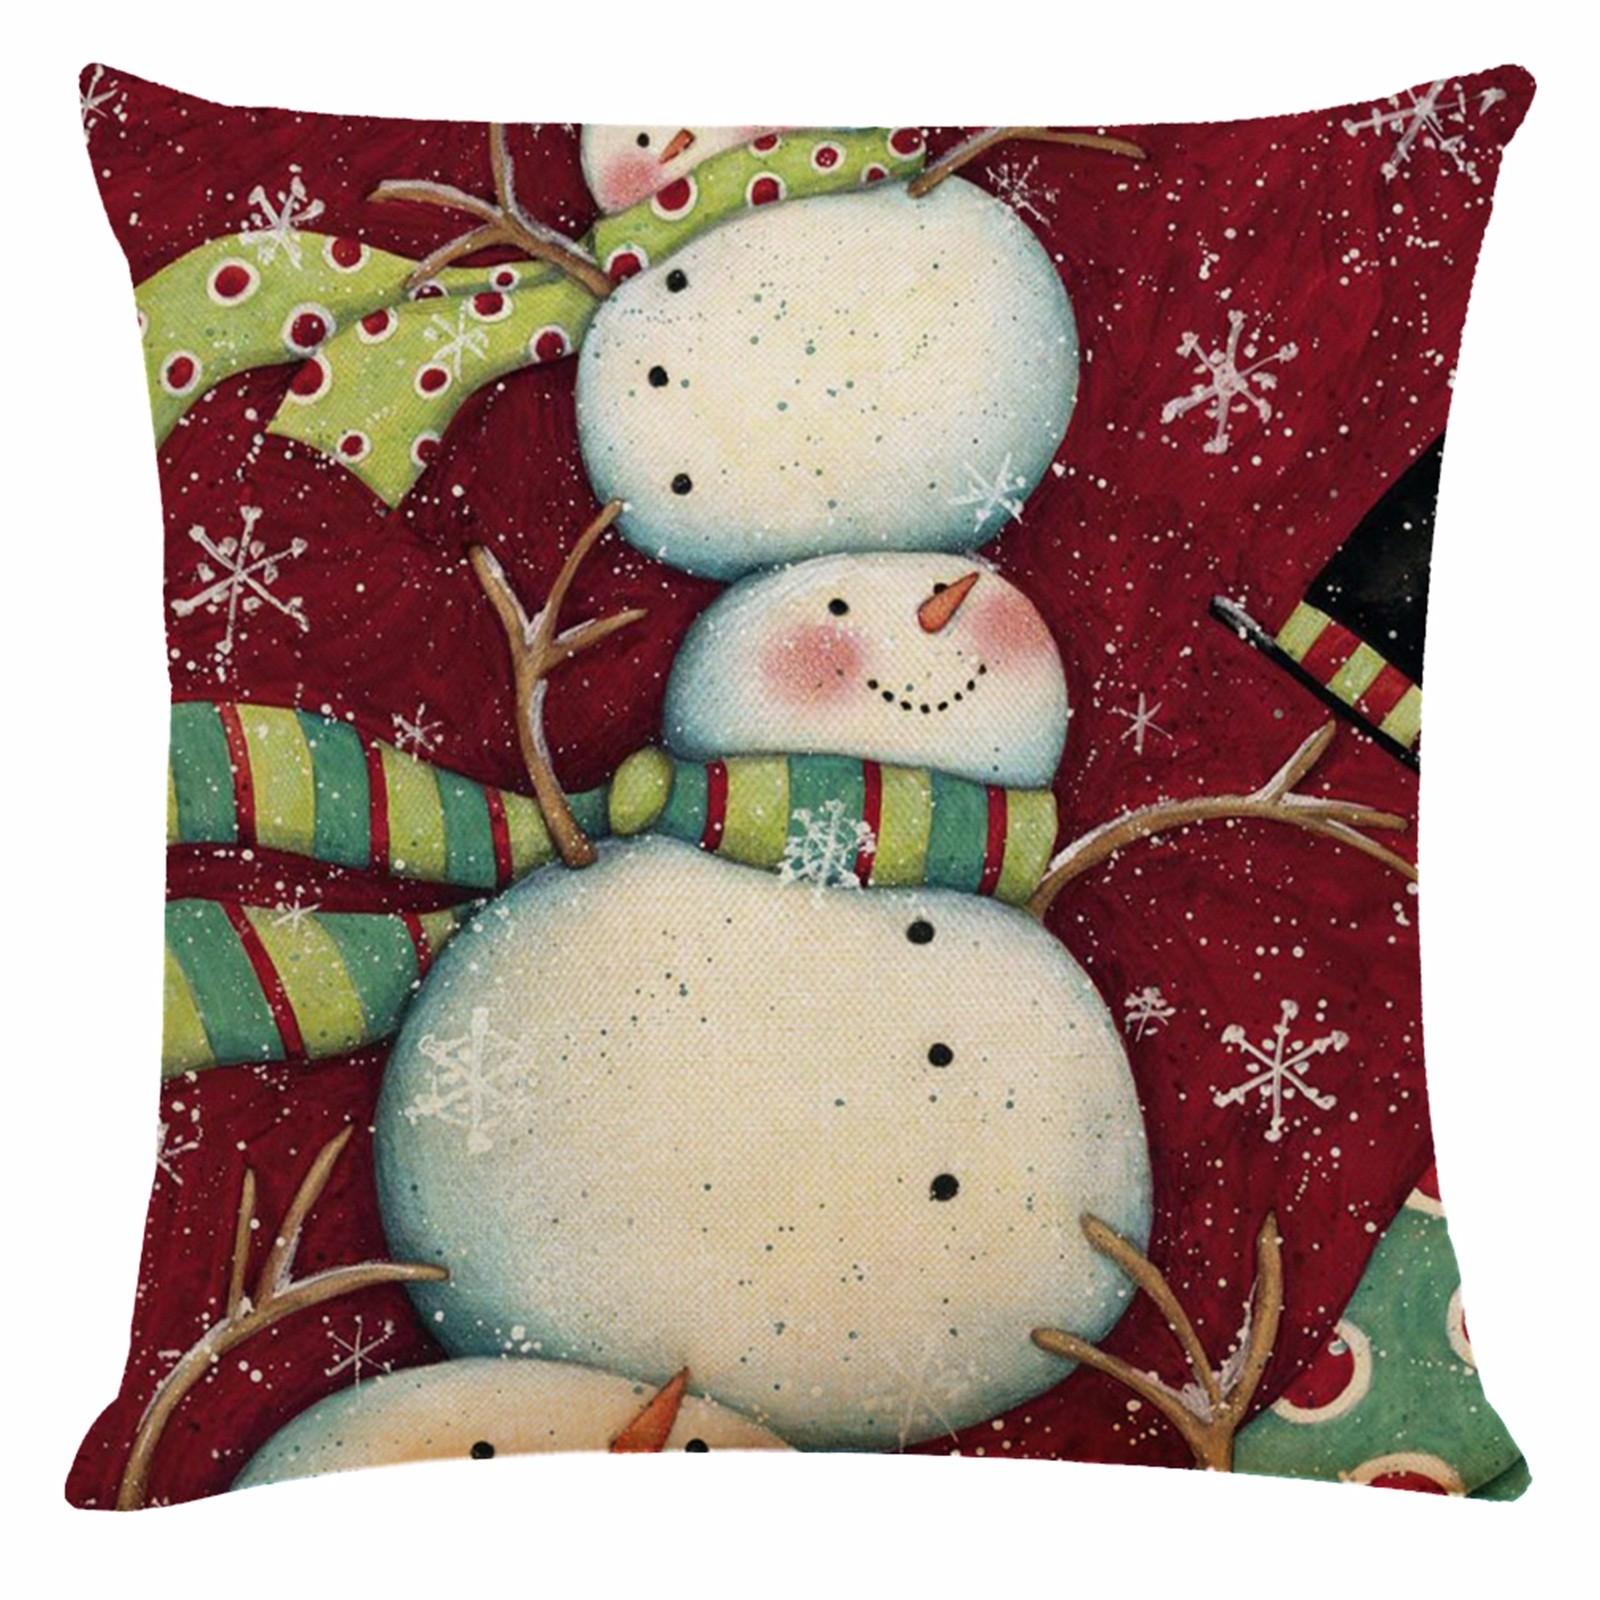 Изображение товара: Наволочка Ouneed Рождественский Чехол на подушку, мягкая, с принтом снеговика, пингвина, подушка для автомобиля